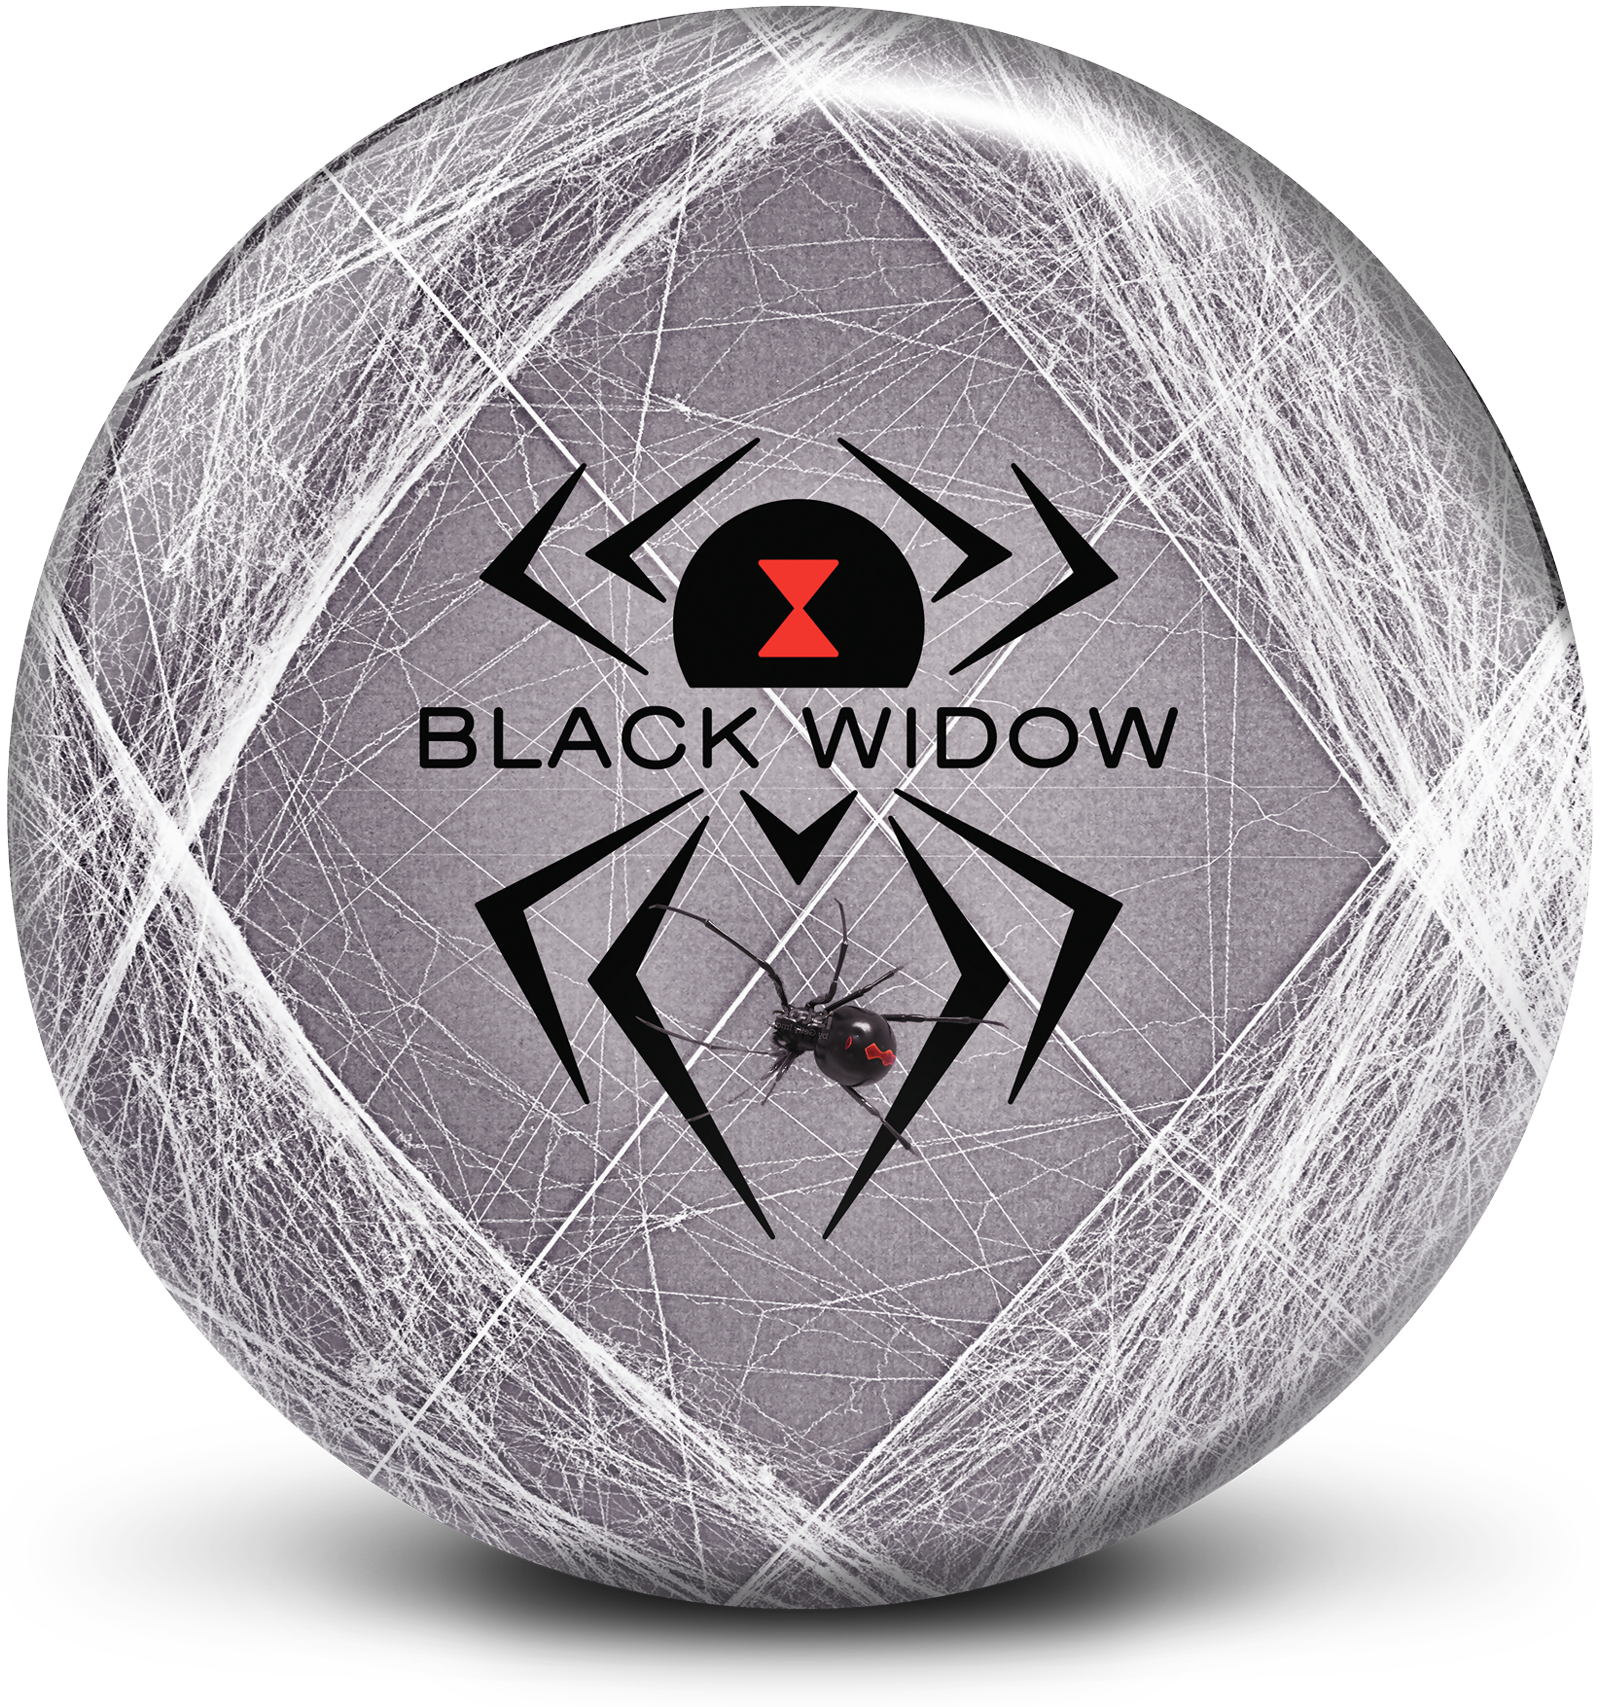 Black Widow Viz-A-Ball – HammerBowling